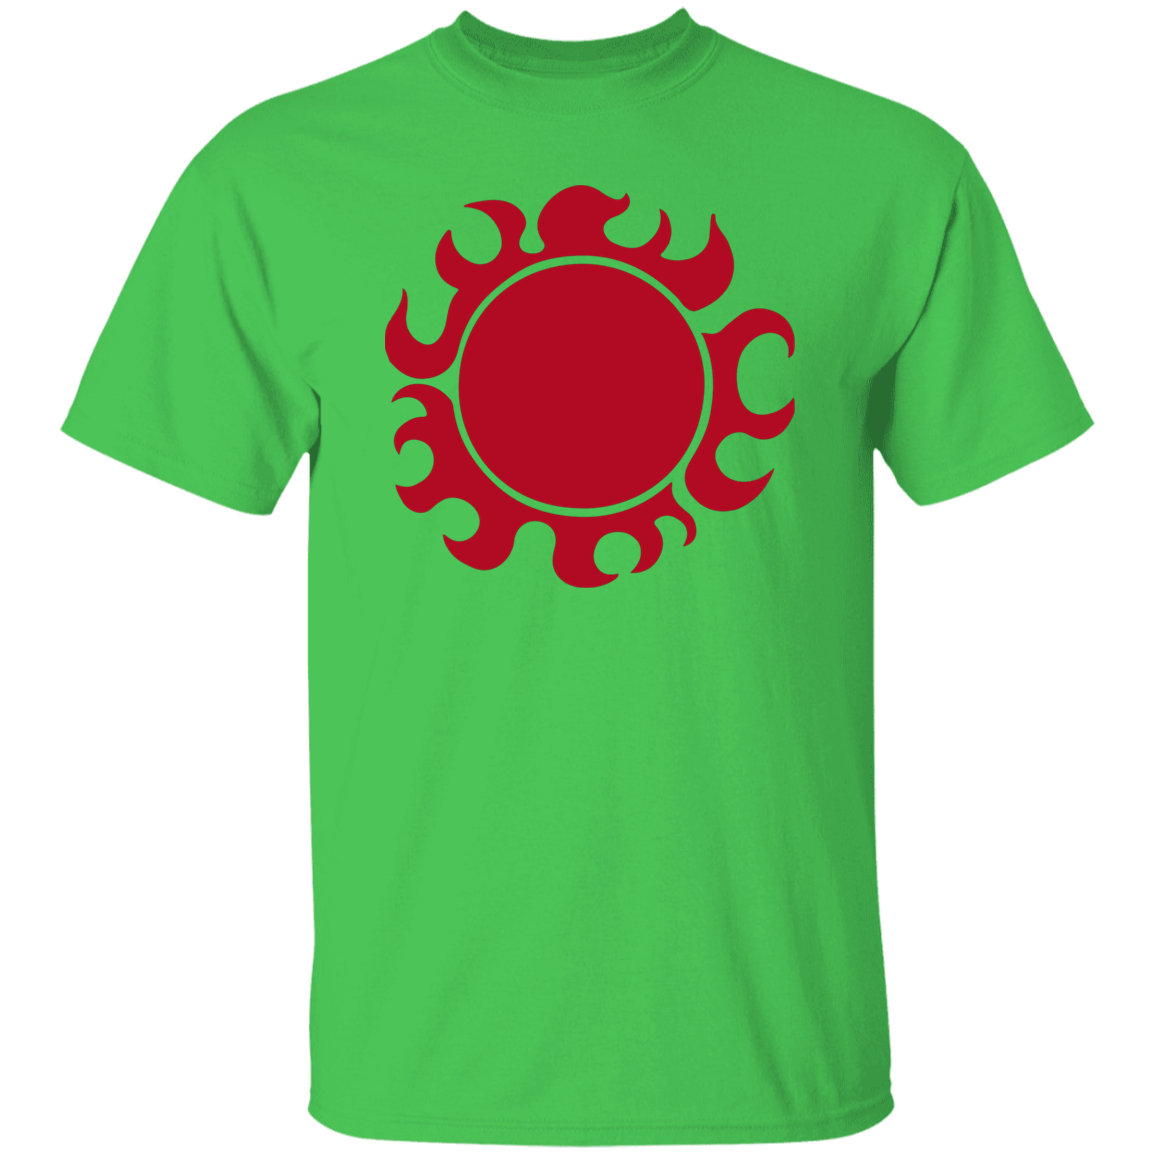 Sun Pirates - Men's T-Shirt